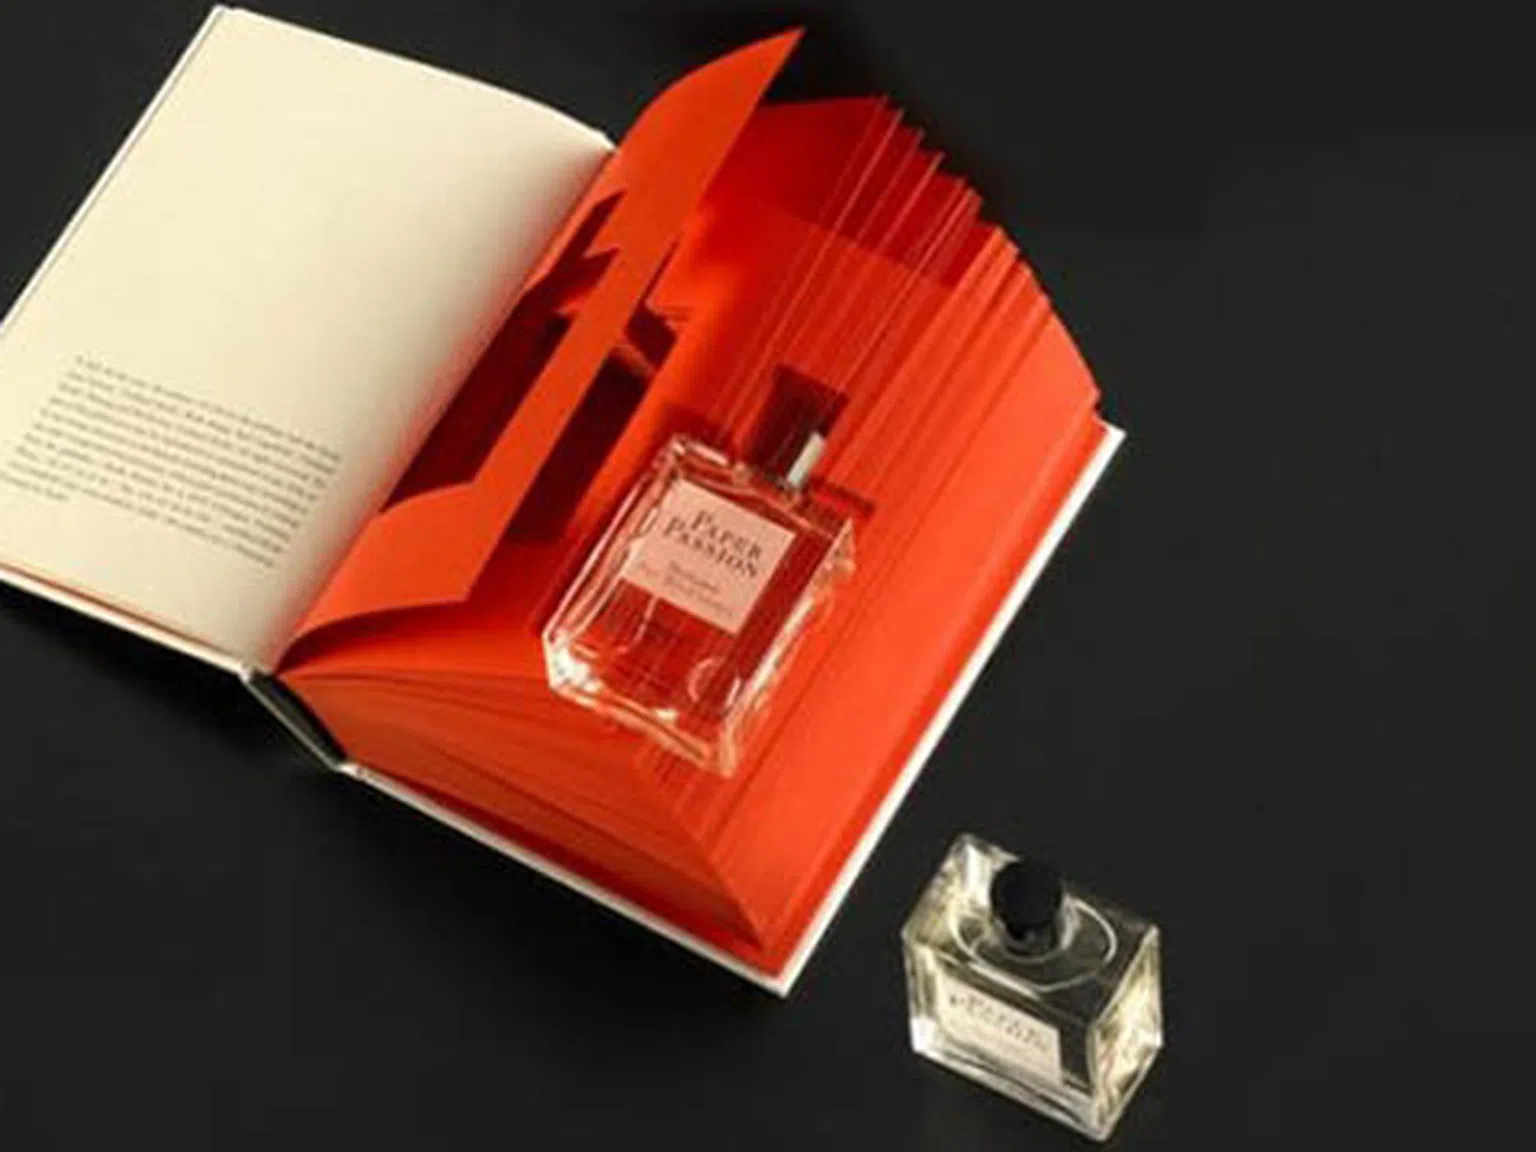 Създадоха парфюм с аромат на книга